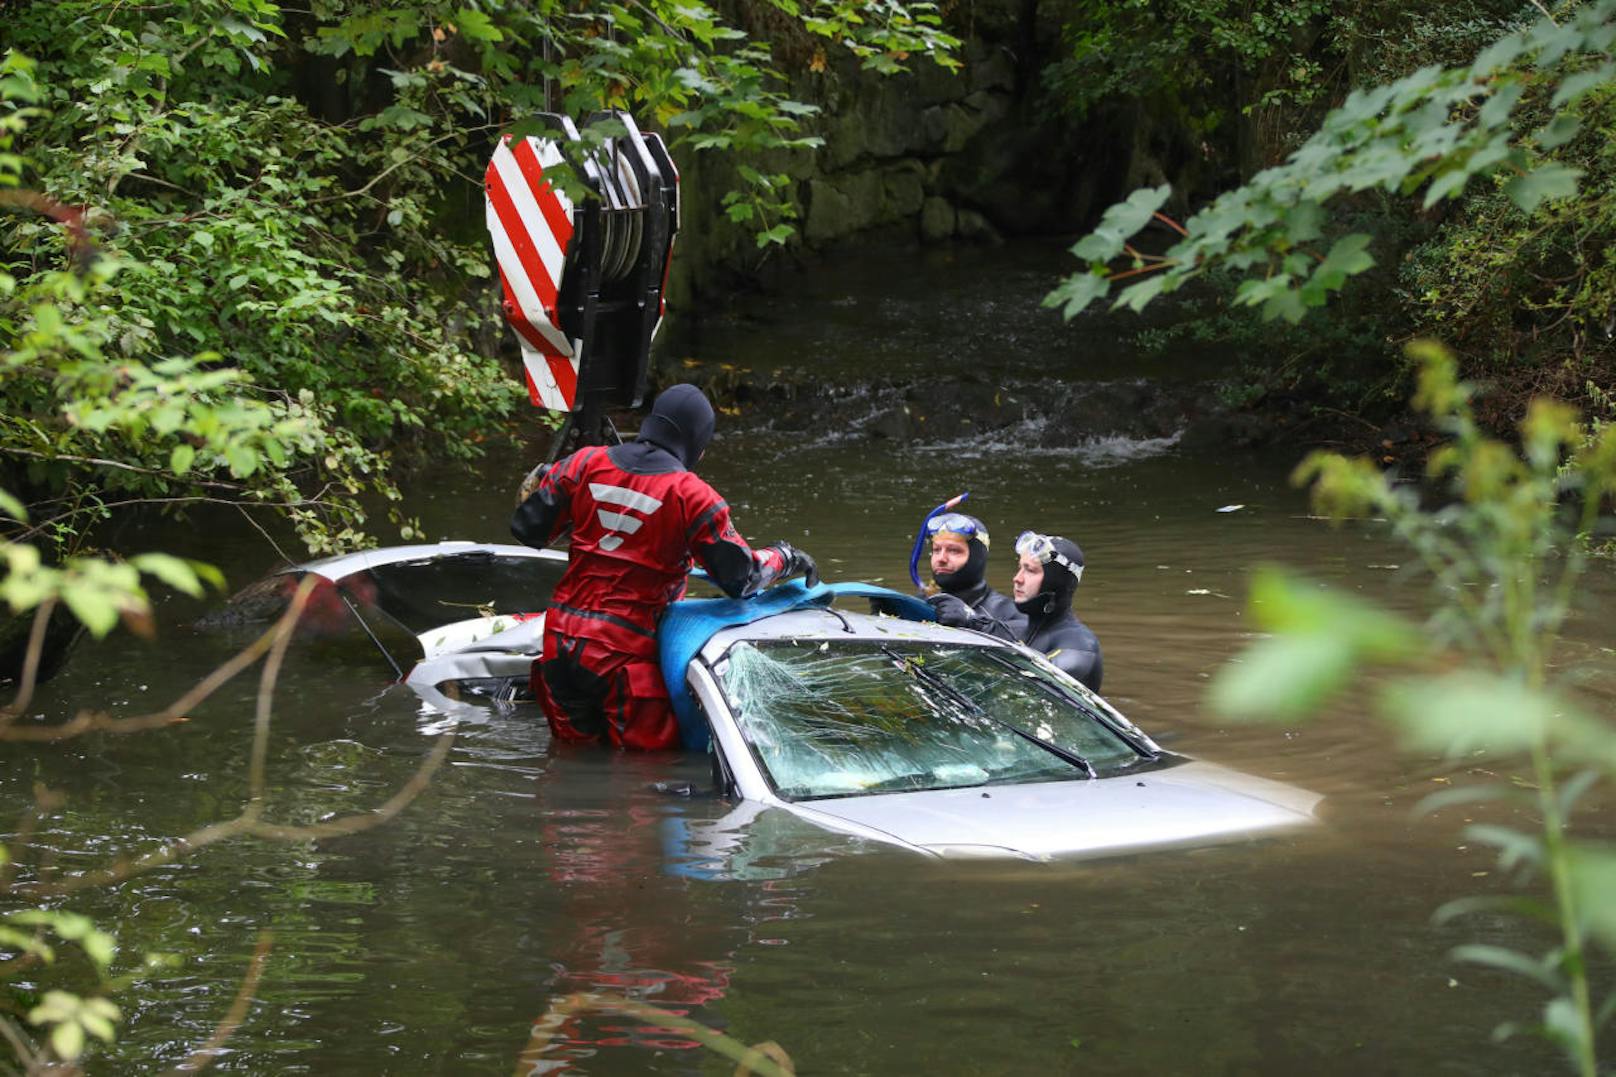 Bei einem Unfall ging das Auto baden, landete in einem Bach. Der 72-jährige Unfalllenker konnte sich selbstständig aus dem Auto retten.